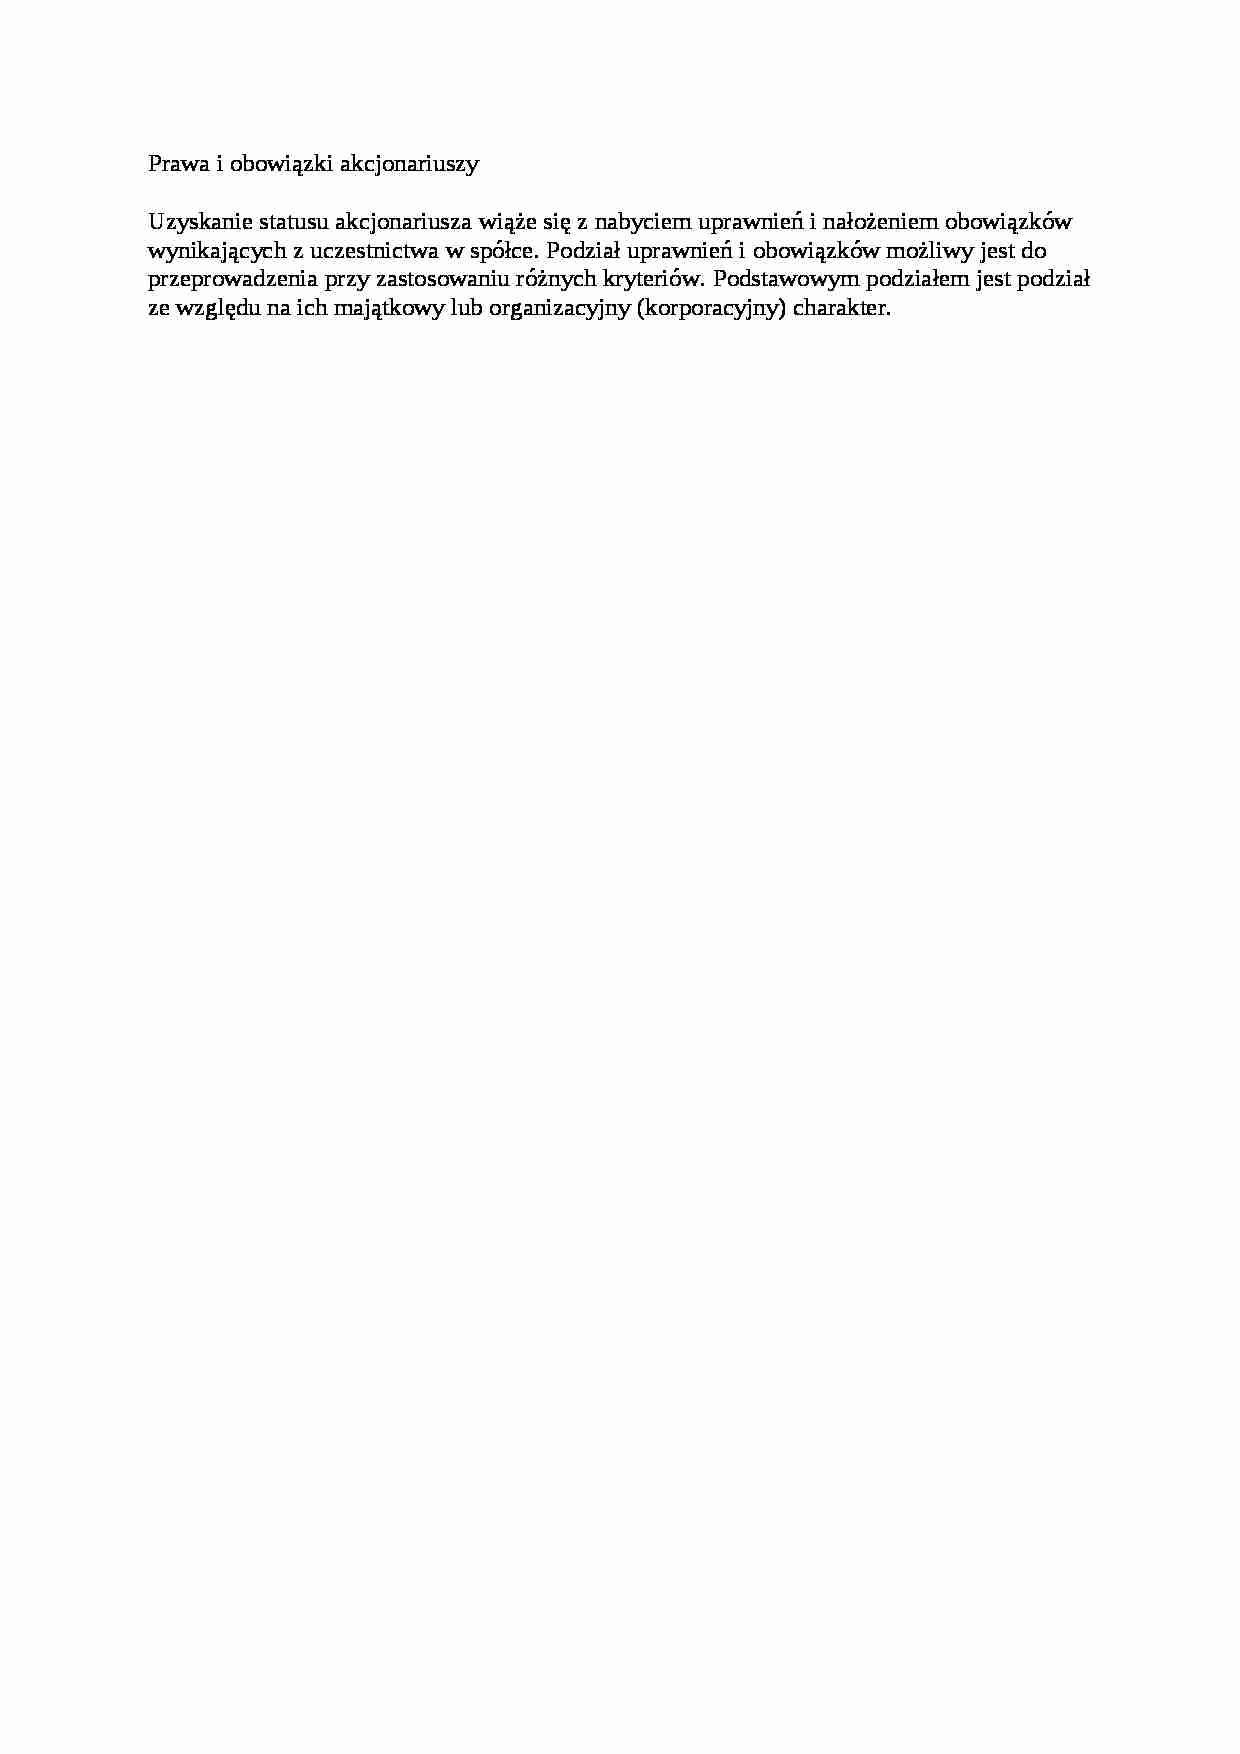 Prawa i obowiązki akcjonariuszy - opracowanie - strona 1